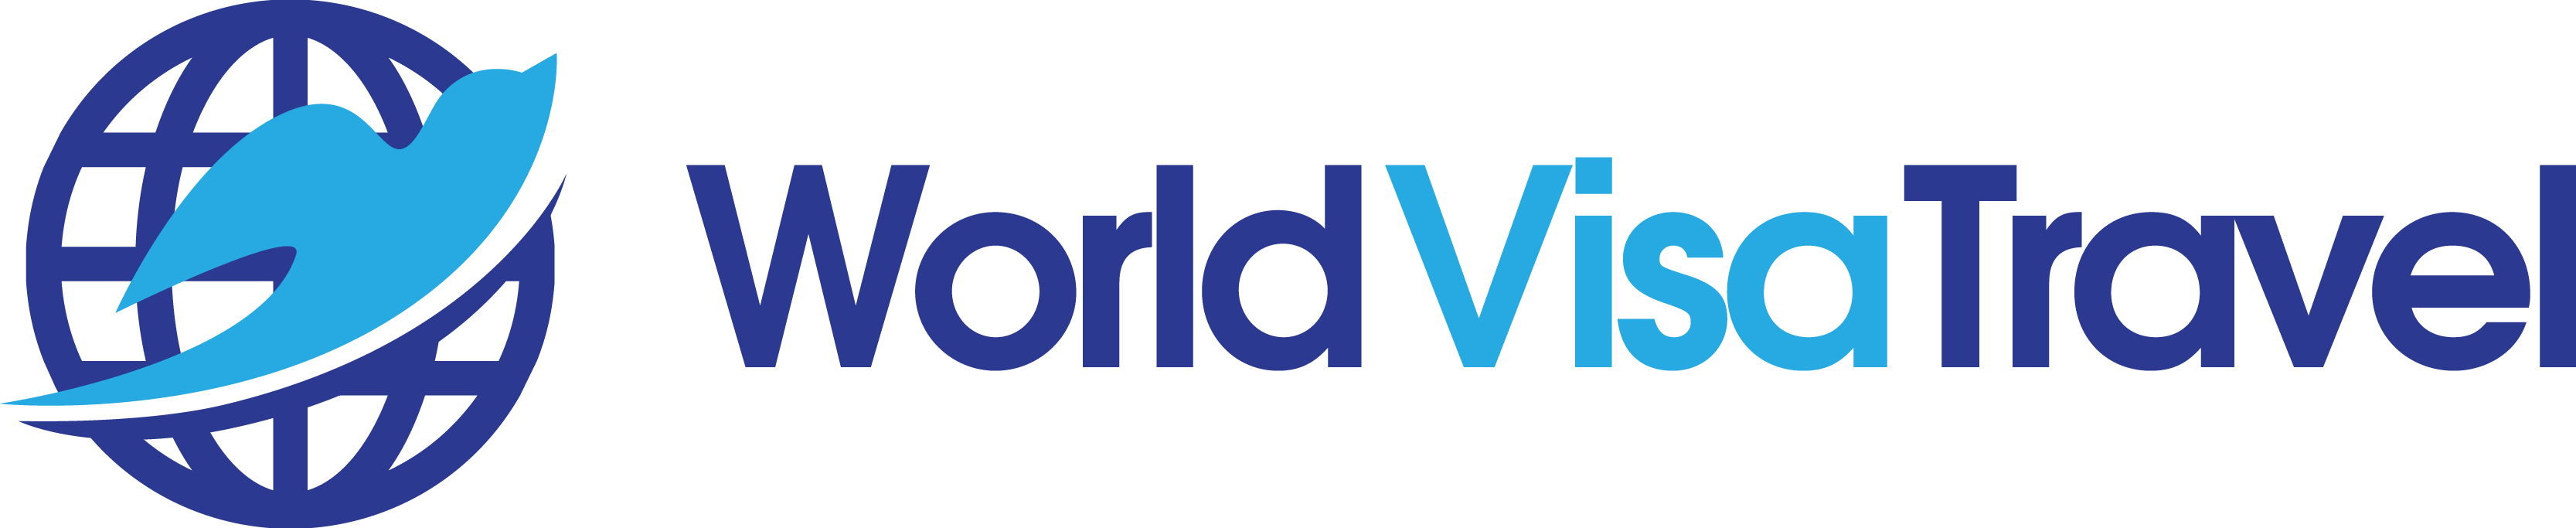 World Visa Travel, Inc.